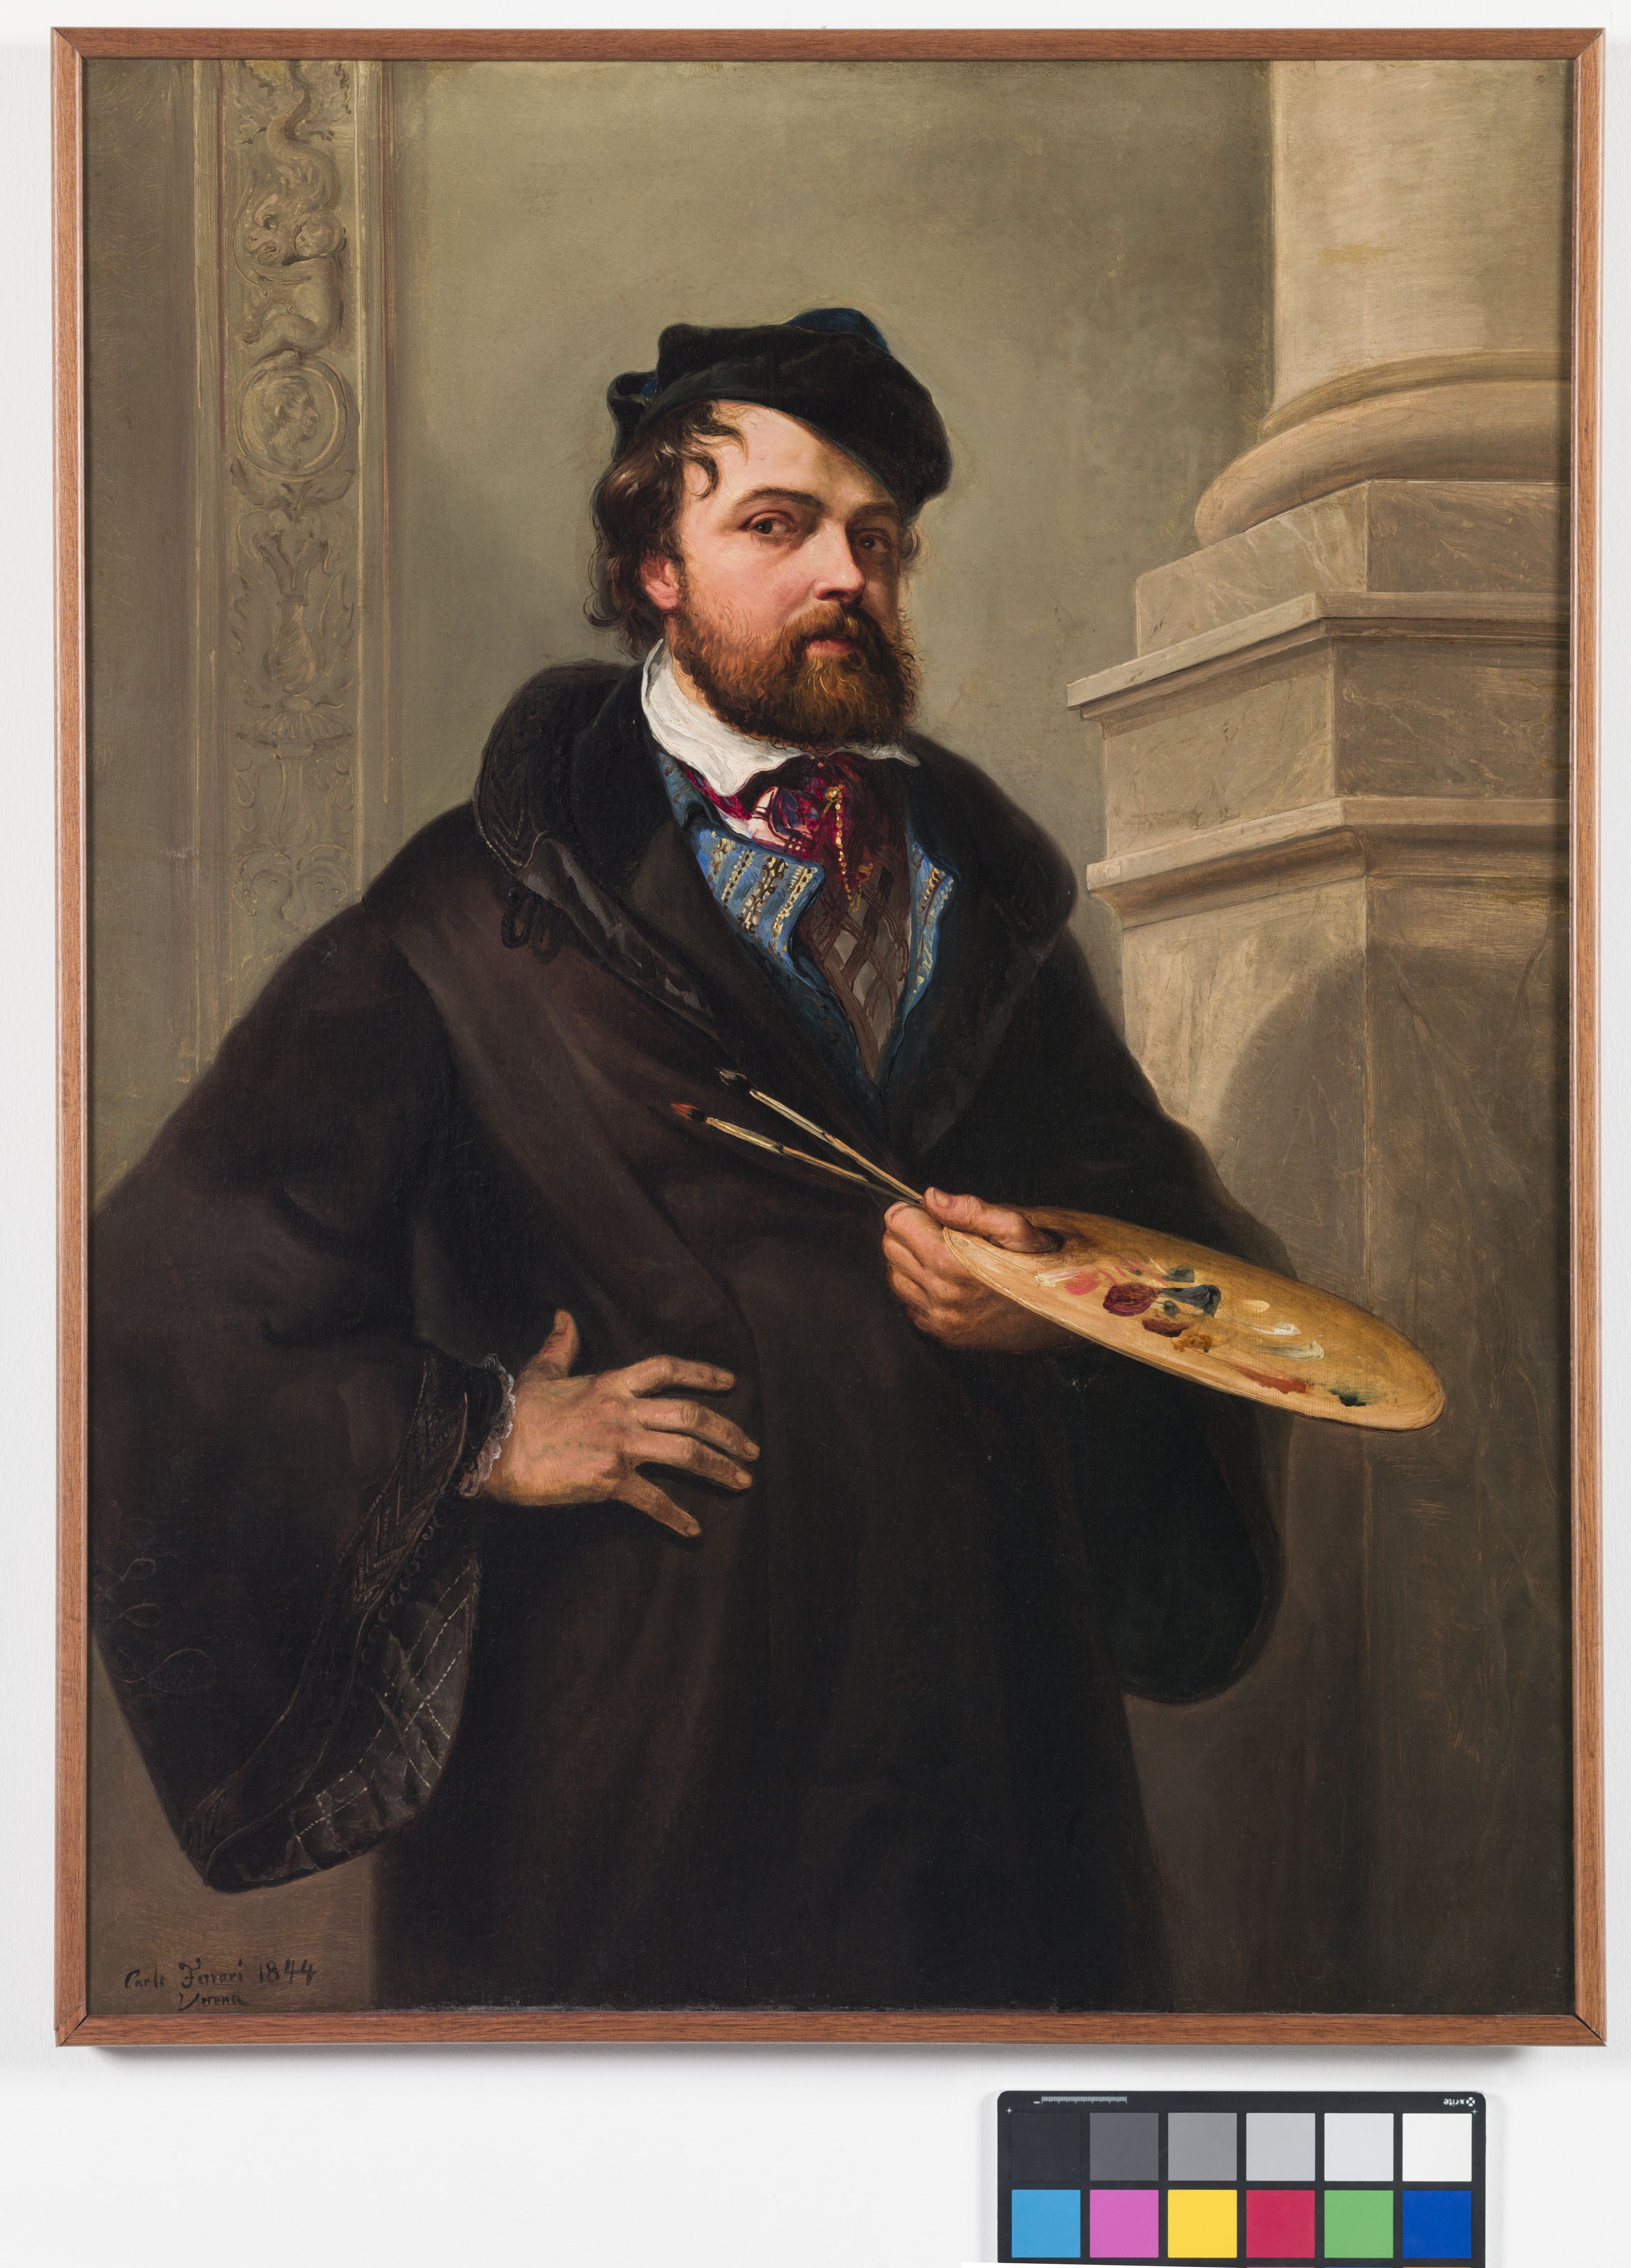 Autoritratto con tavolozza, busto ritratto maschile con barba, cappello e tavolozza (dipinto, opera isolata) di Ferrari Carlo detto Ferrarin (sec. XIX)